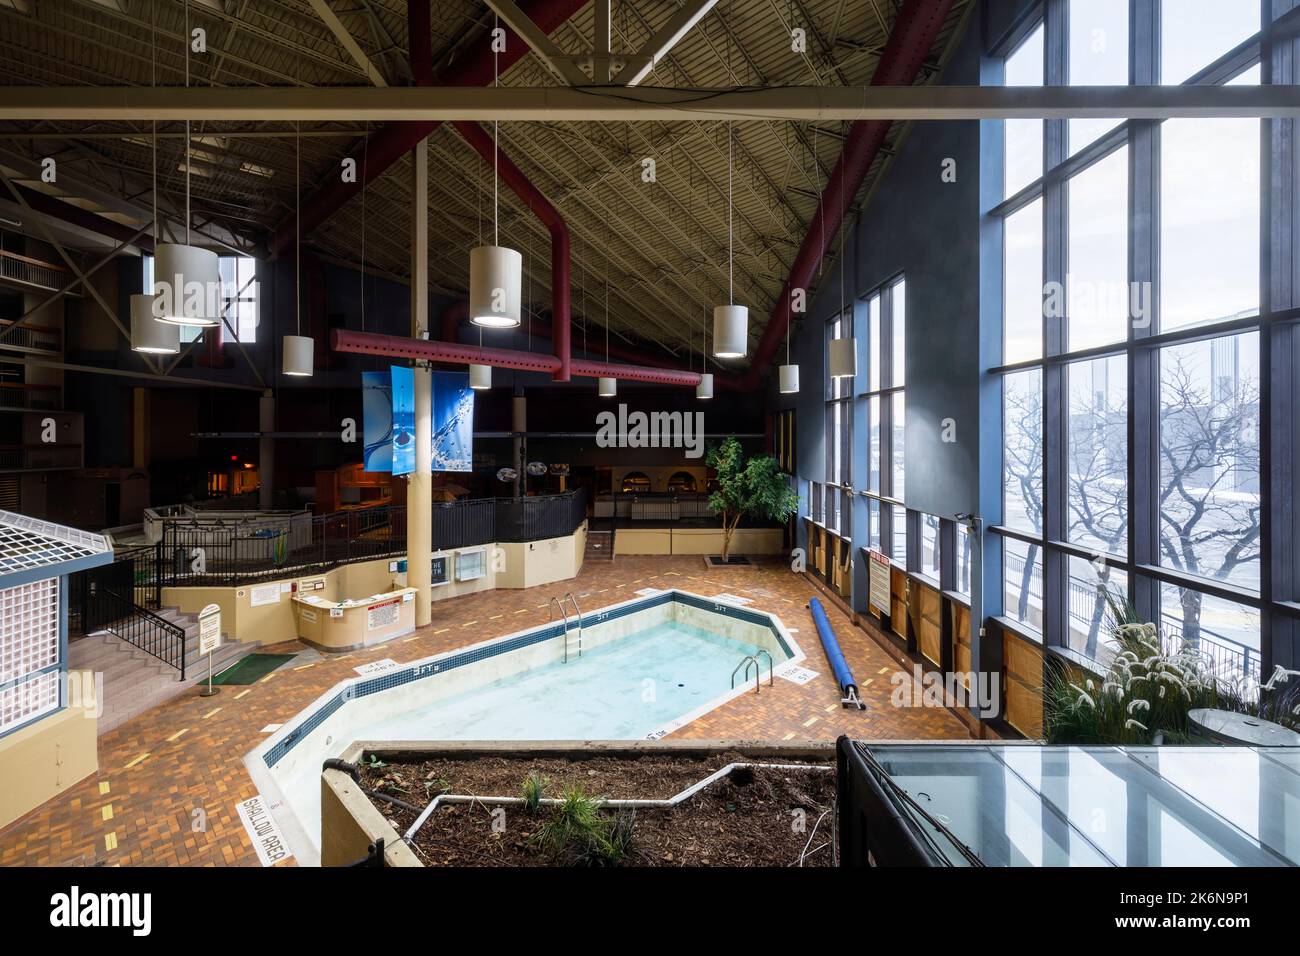 Vue en hauteur de la piscine intérieure de l'hôtel Holiday Inn Yorkdale, maintenant démoli à Toronto, Ontario, Canada. Banque D'Images